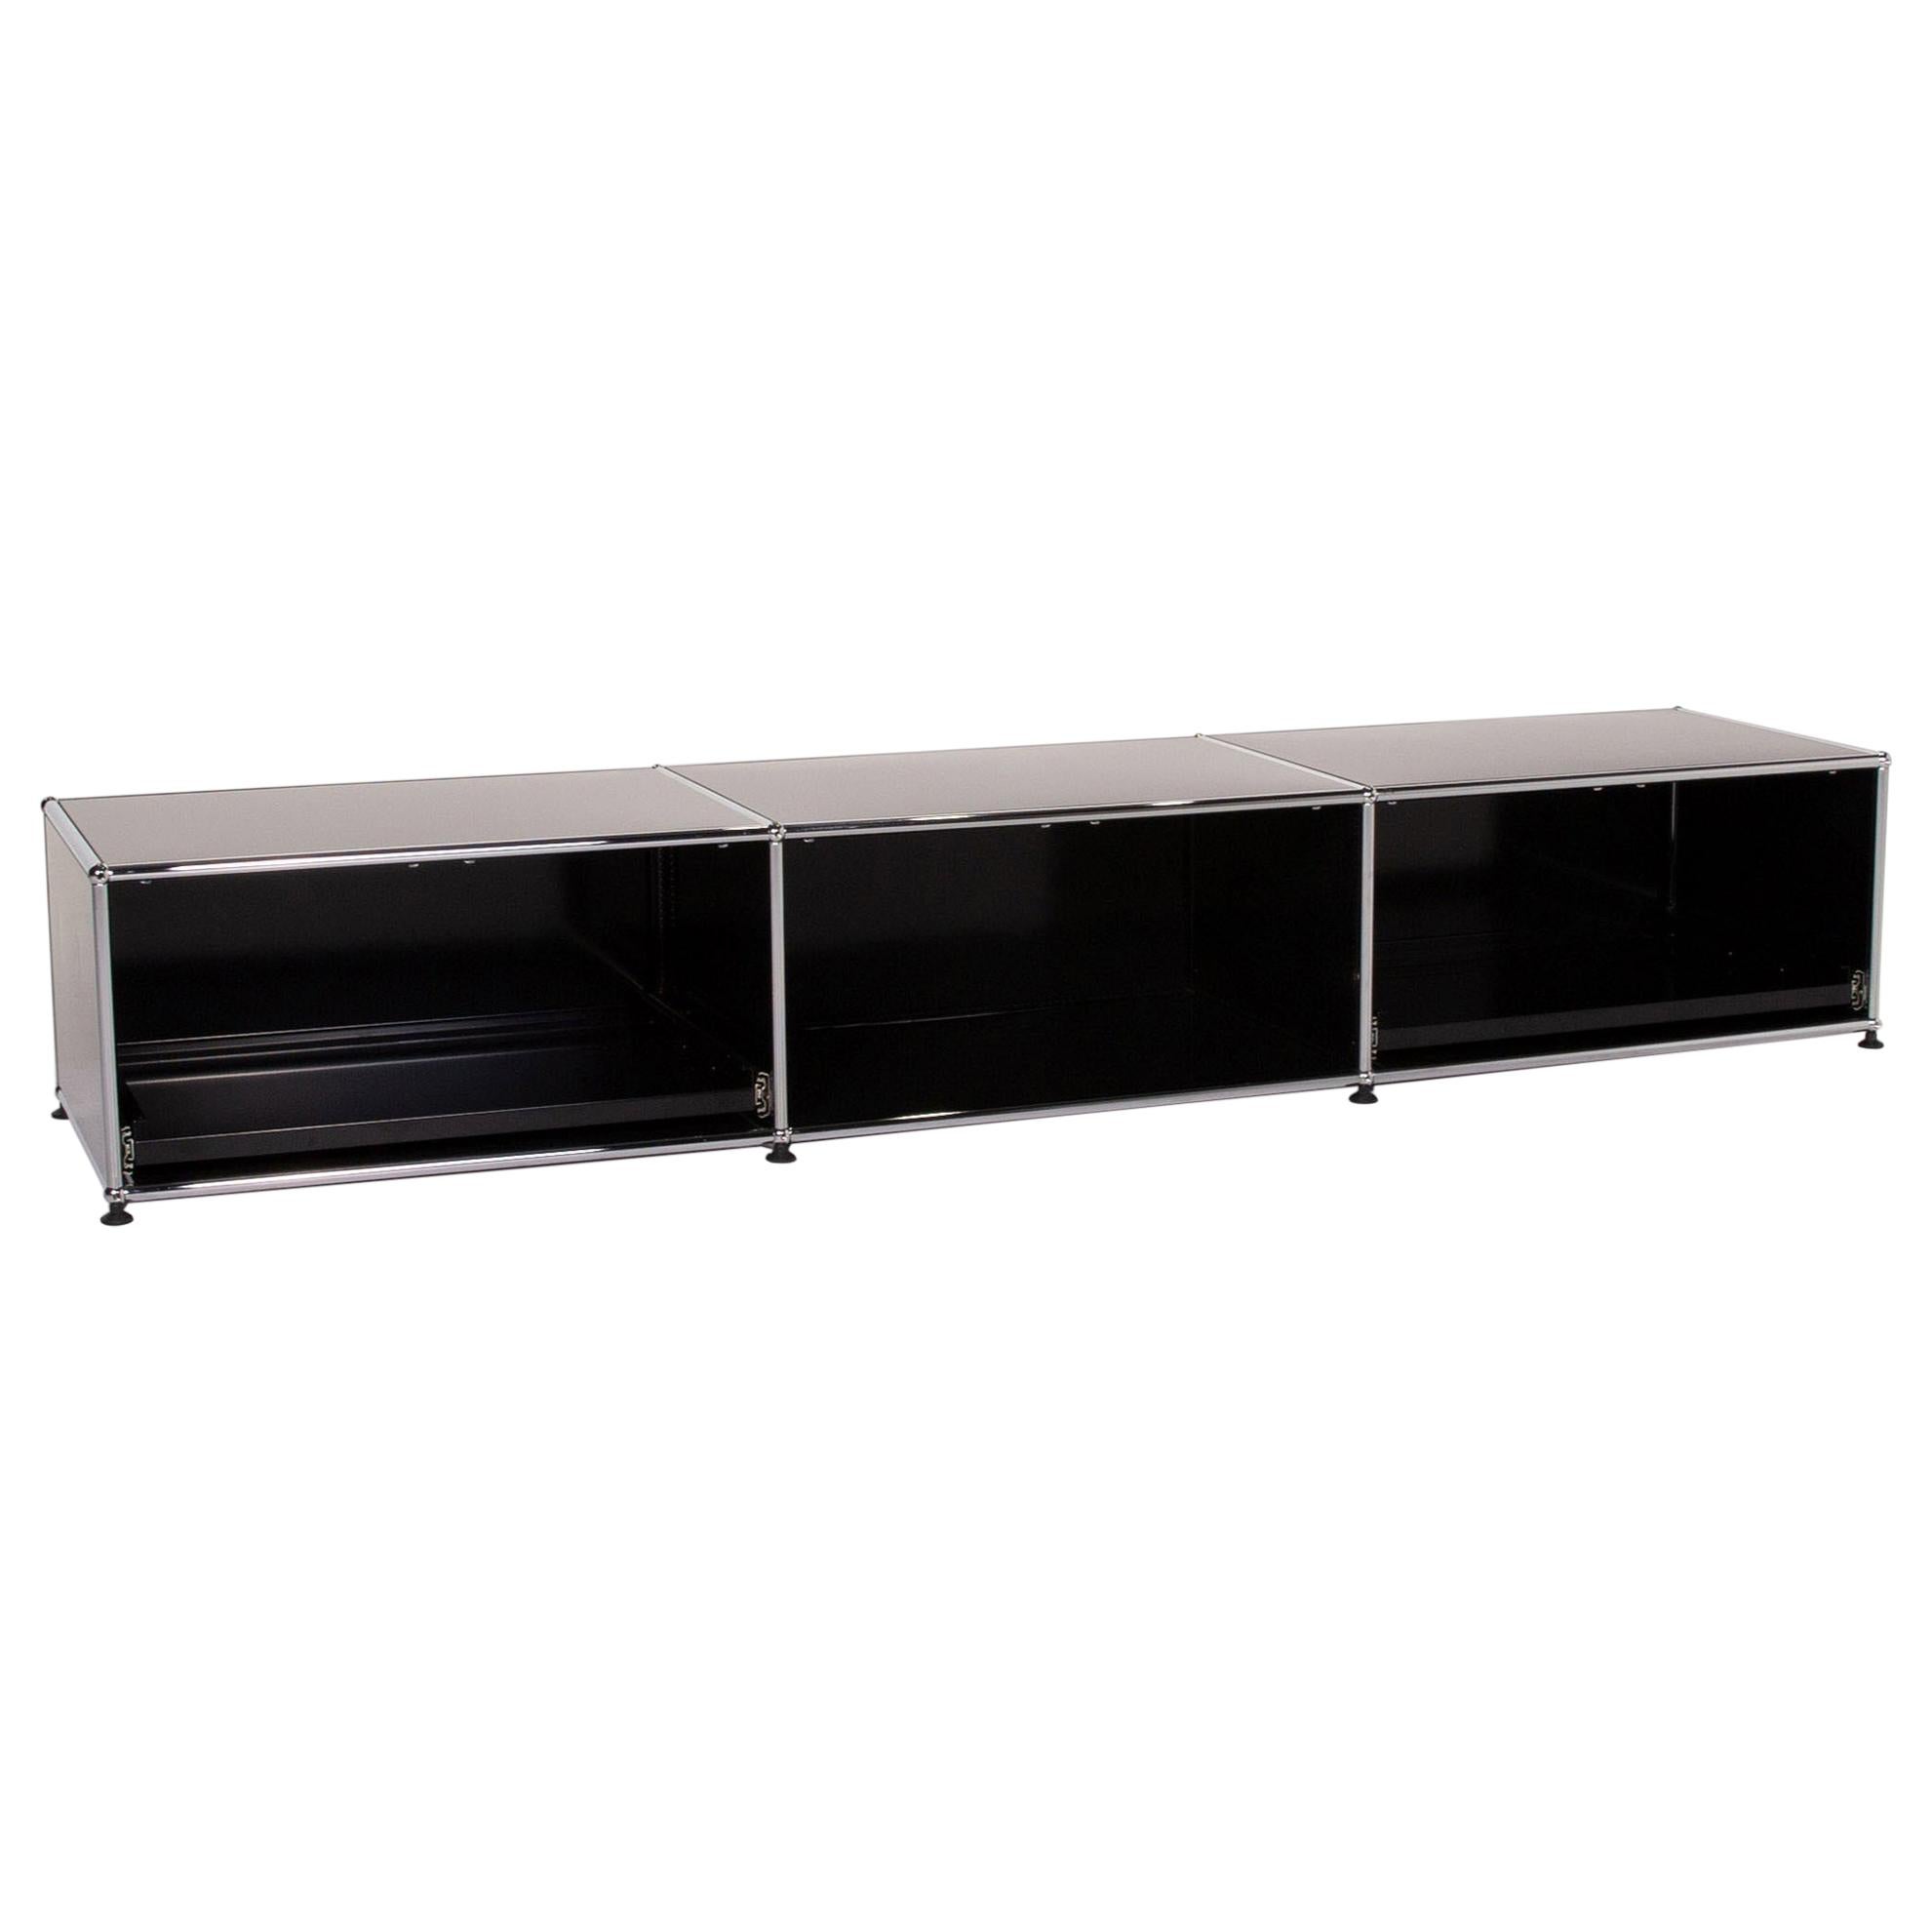 USM Haller Metal Sideboard Black Office Furniture Shelf Lowboard Modular